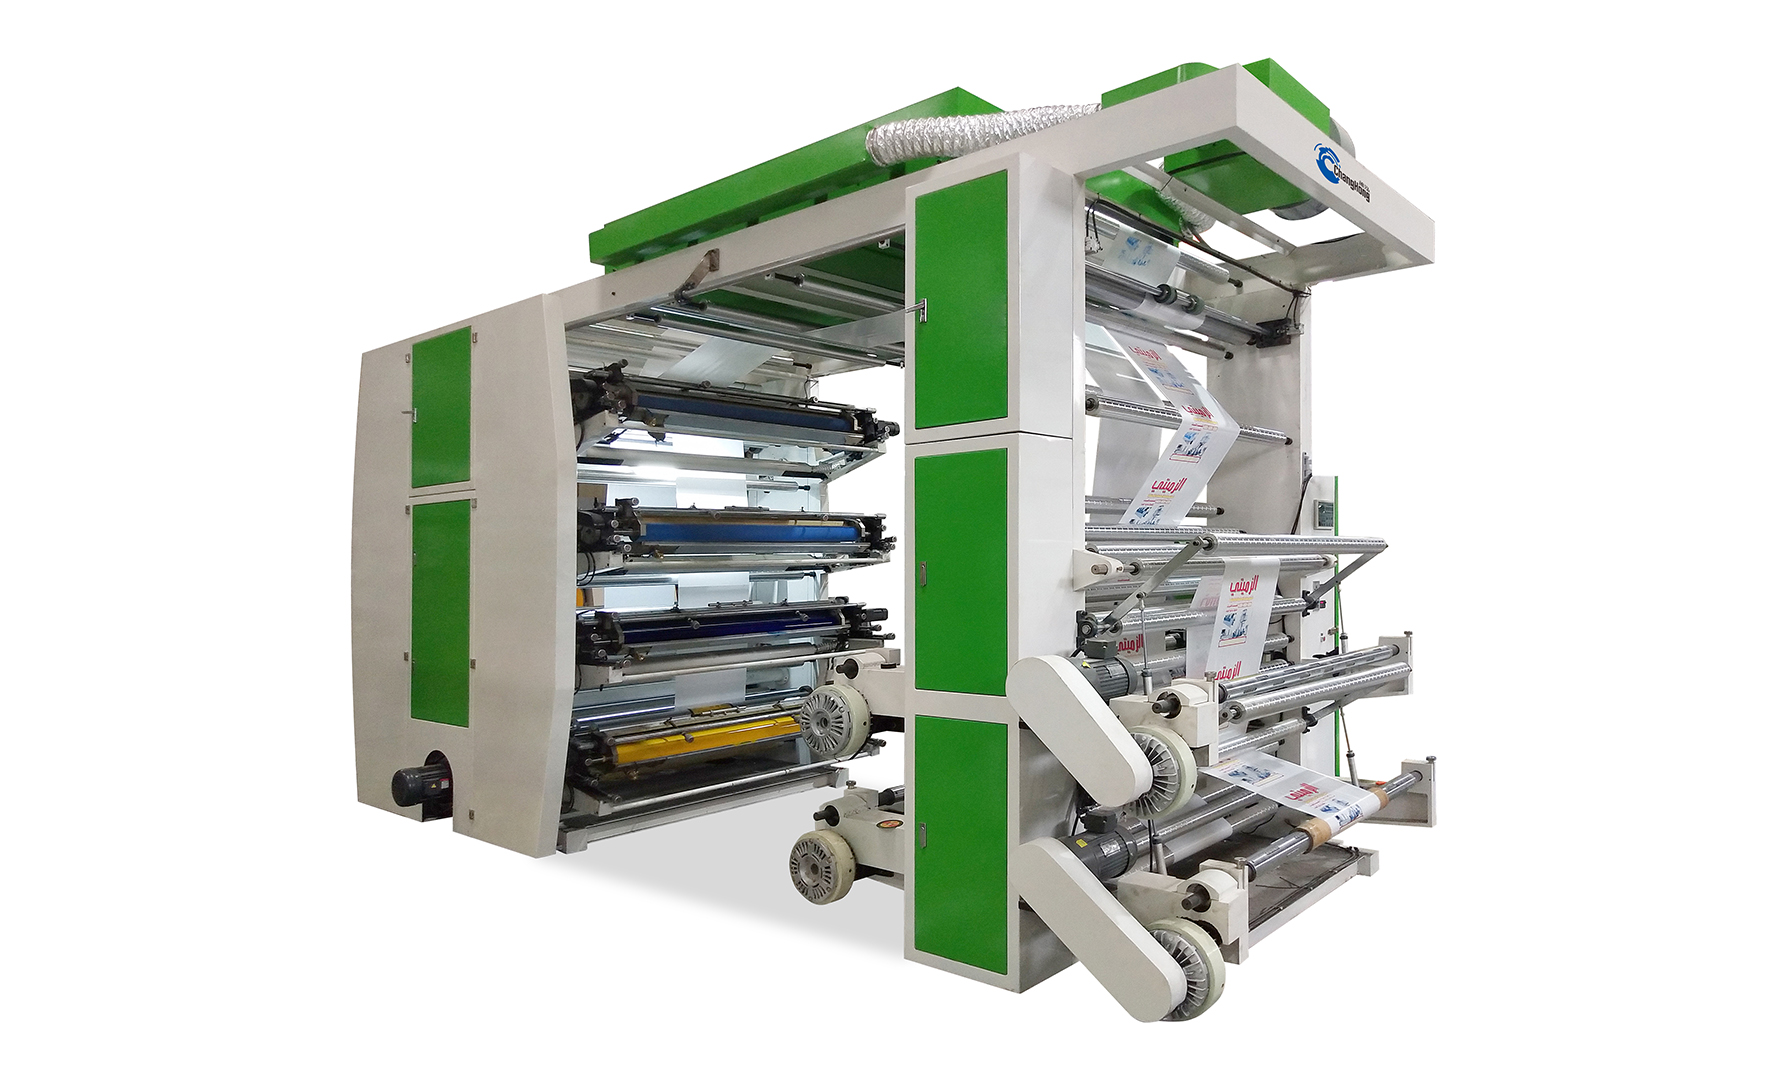 फिल्म पेट, बीओपीपी, पीई, सीपीपी, पेपर प्रिंटिंग के लिए फैक्टरी प्रोमोशनल हाई स्पीड 8 कलर स्टैक प्रकार प्लास्टिक फ्लेक्सो प्रिंटिंग मशीन